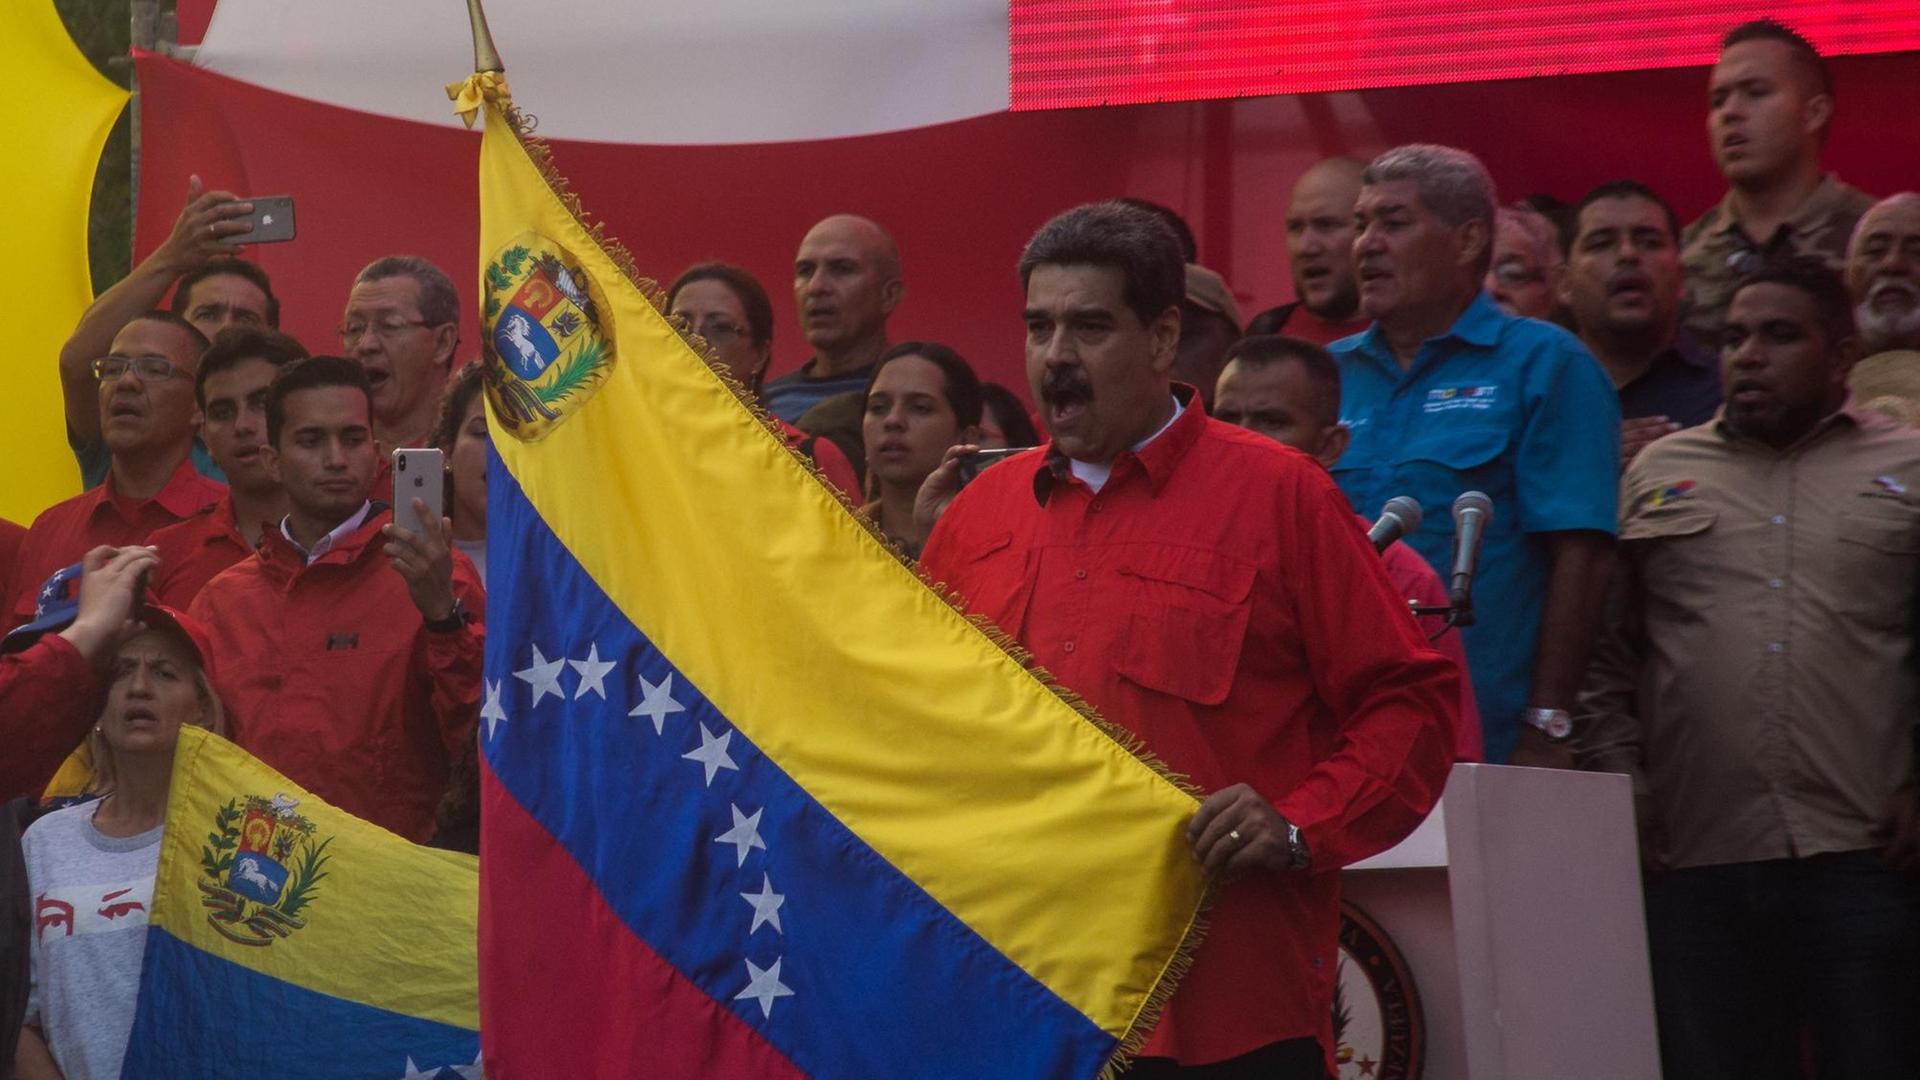 01.05.2019, Venezuela, Caracas: Nicolas Maduro (M), Präsident von Venezuela, hält während einer Kundgebung am Tag der Arbeit eine Flagge von Venezuela und singt die Nationalhymne.